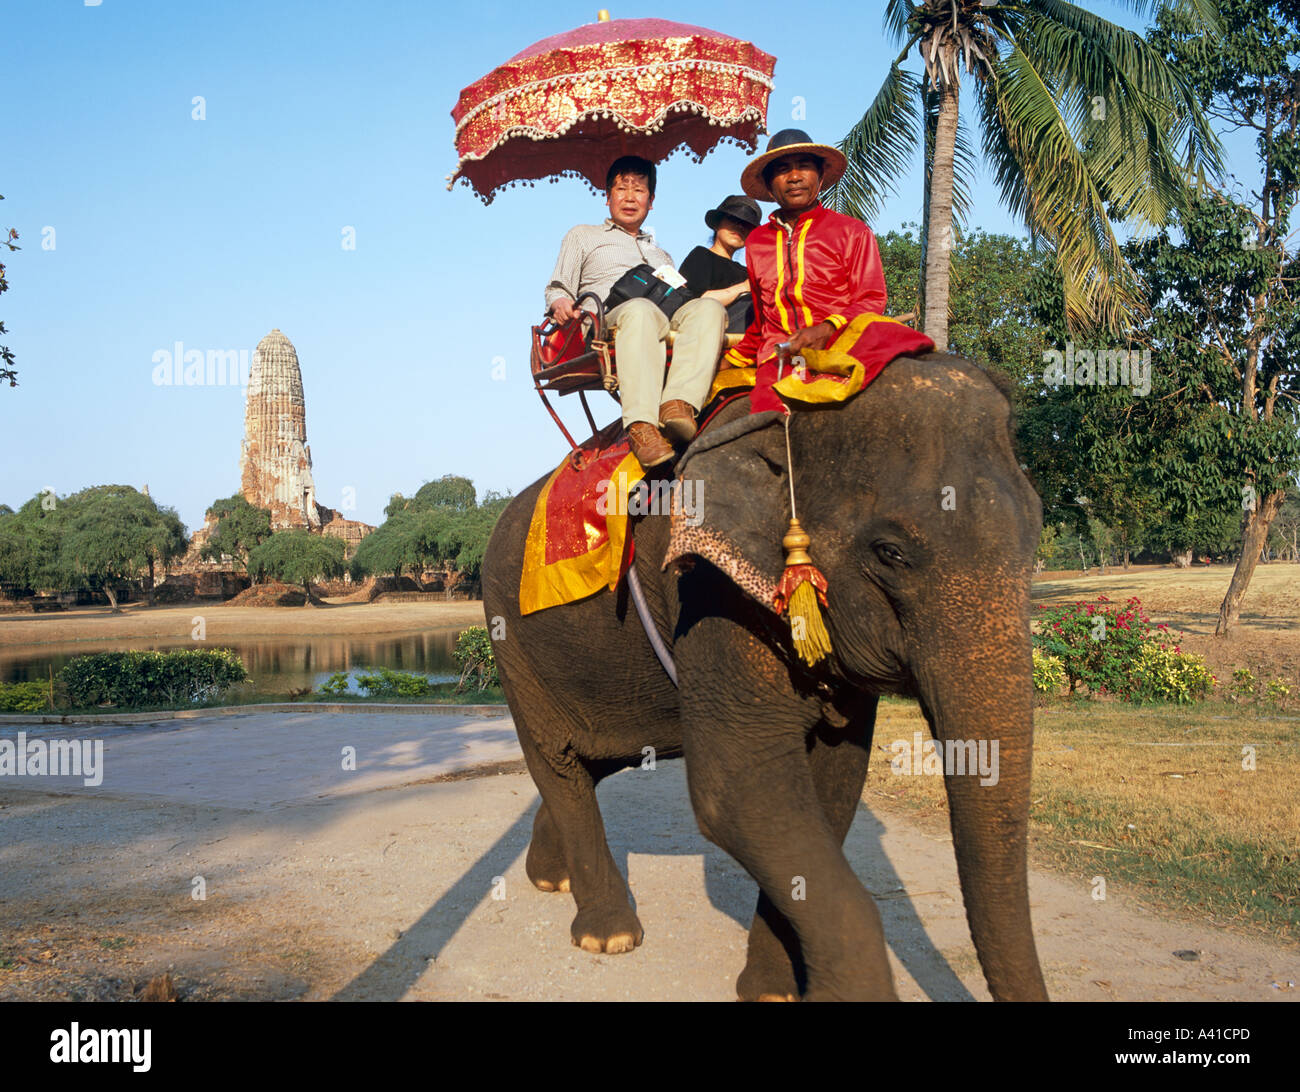 Equitazione elefante nell'antica capitale del Siam Ayuthaya Thailandia del sud-est asiatico Foto Stock